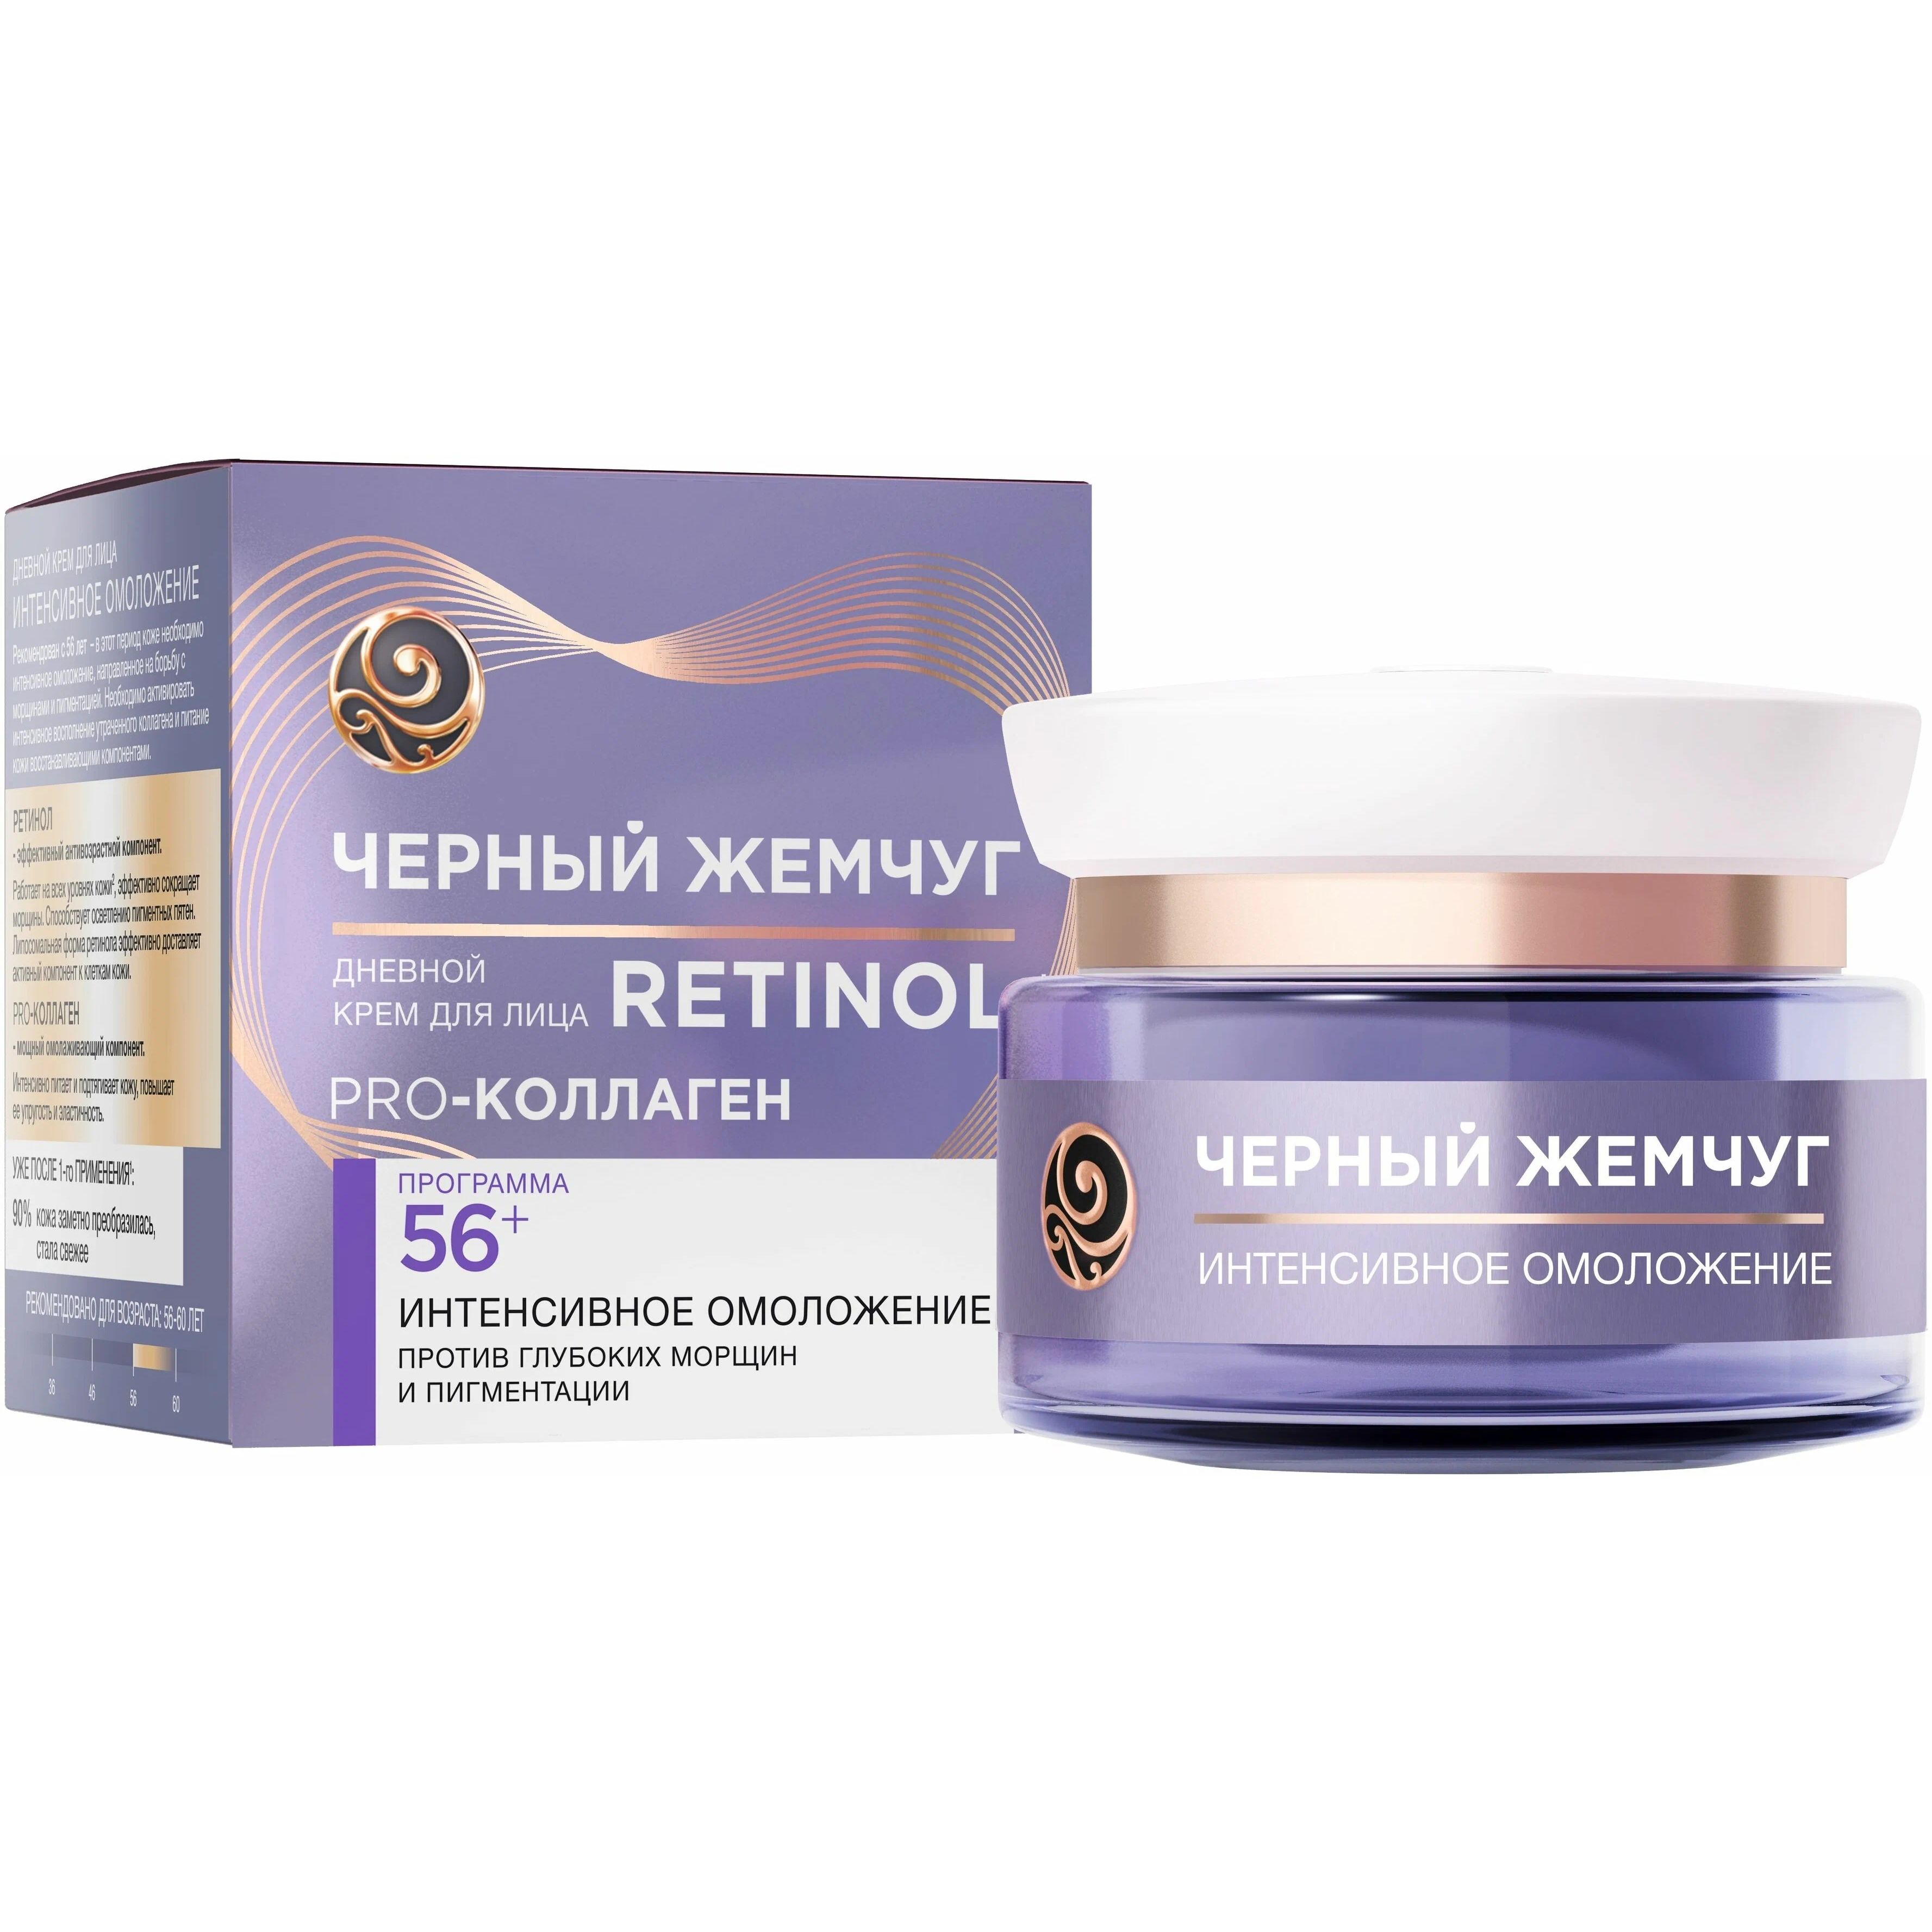 Крем для лица Черный Жемчуг Retinol+ омолаживающий, 56++, 50 мл витэкс тоник интенсив для лица шеи и декольте коллагеновый retinol